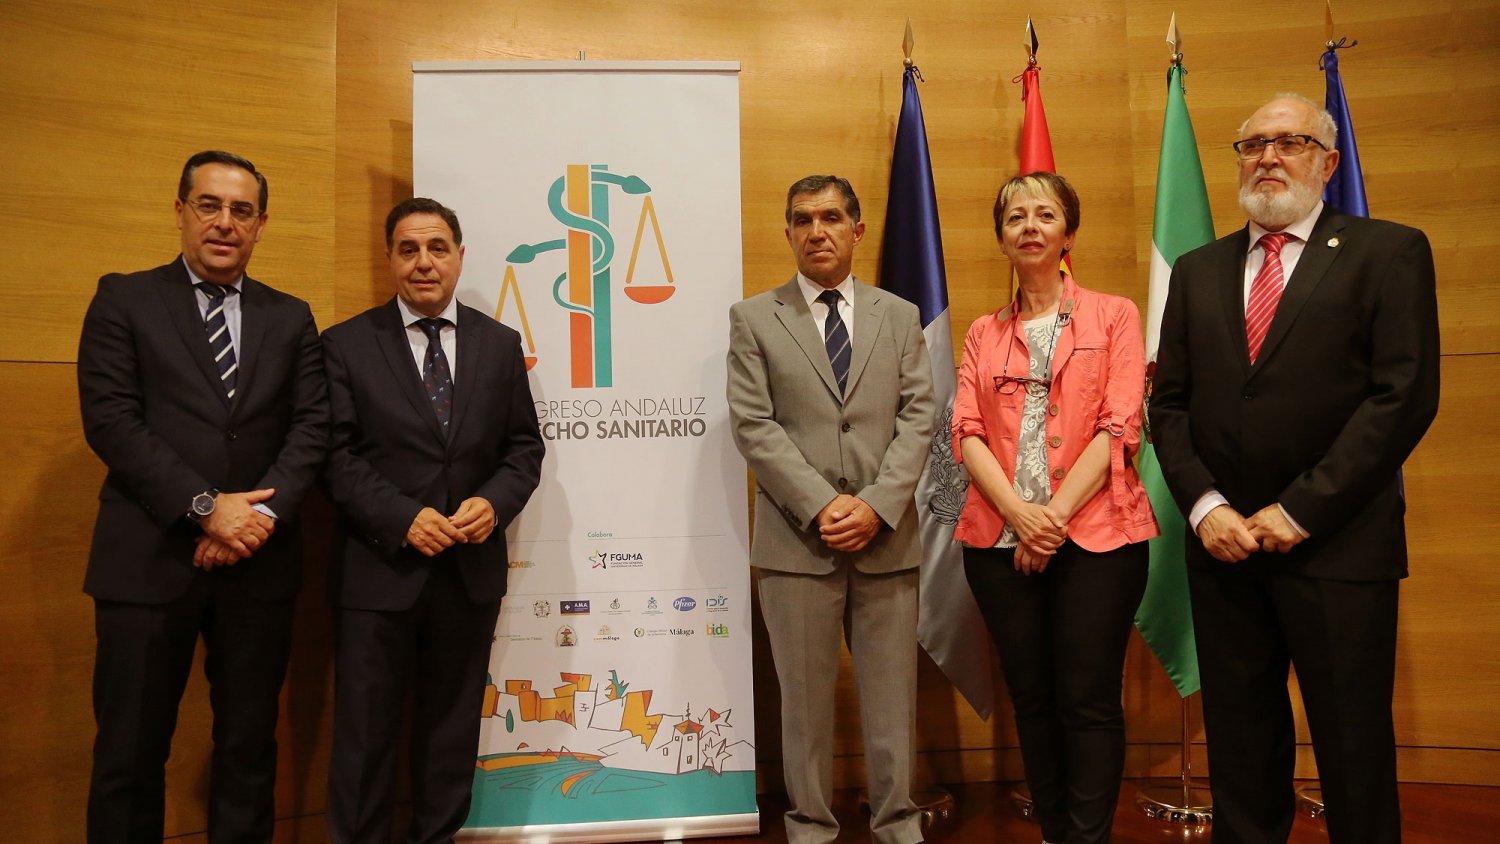 El II Congreso Andaluz de Derecho Sanitario reúne a más de un centenar de profesionales de la medicina y del ámbito jurídico